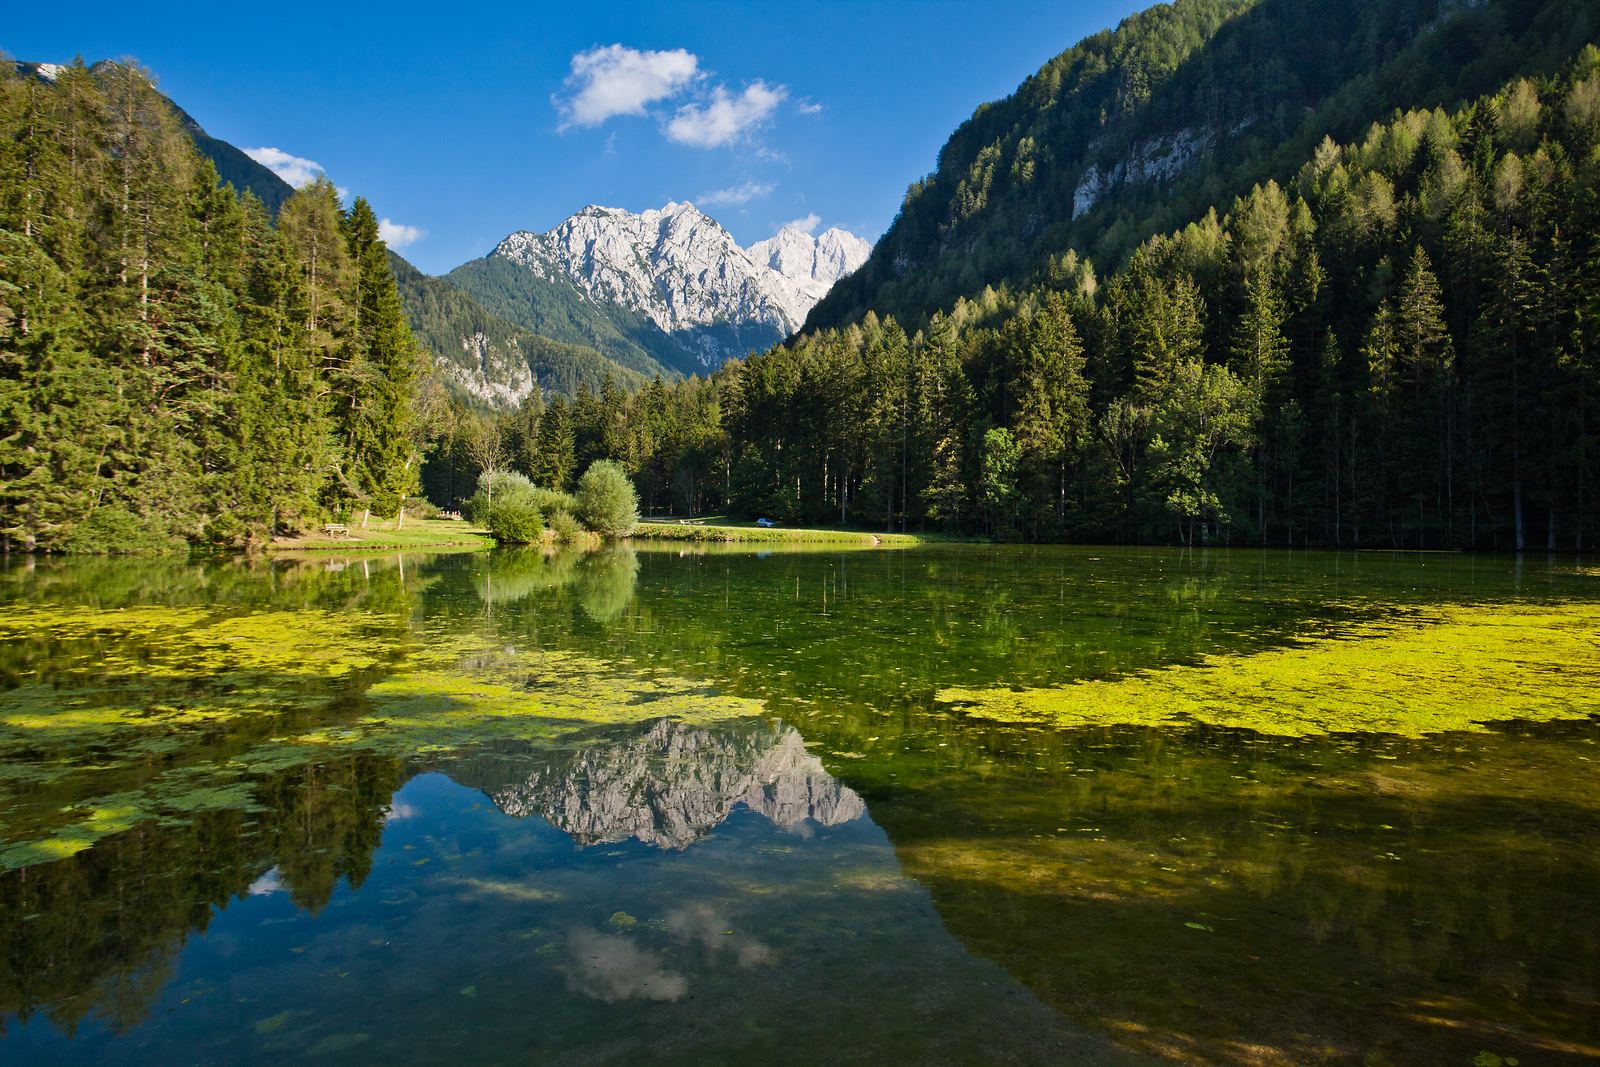 Planšarsko jezero, Jezersko, Slovinsko. Foto: Jošt Gantar